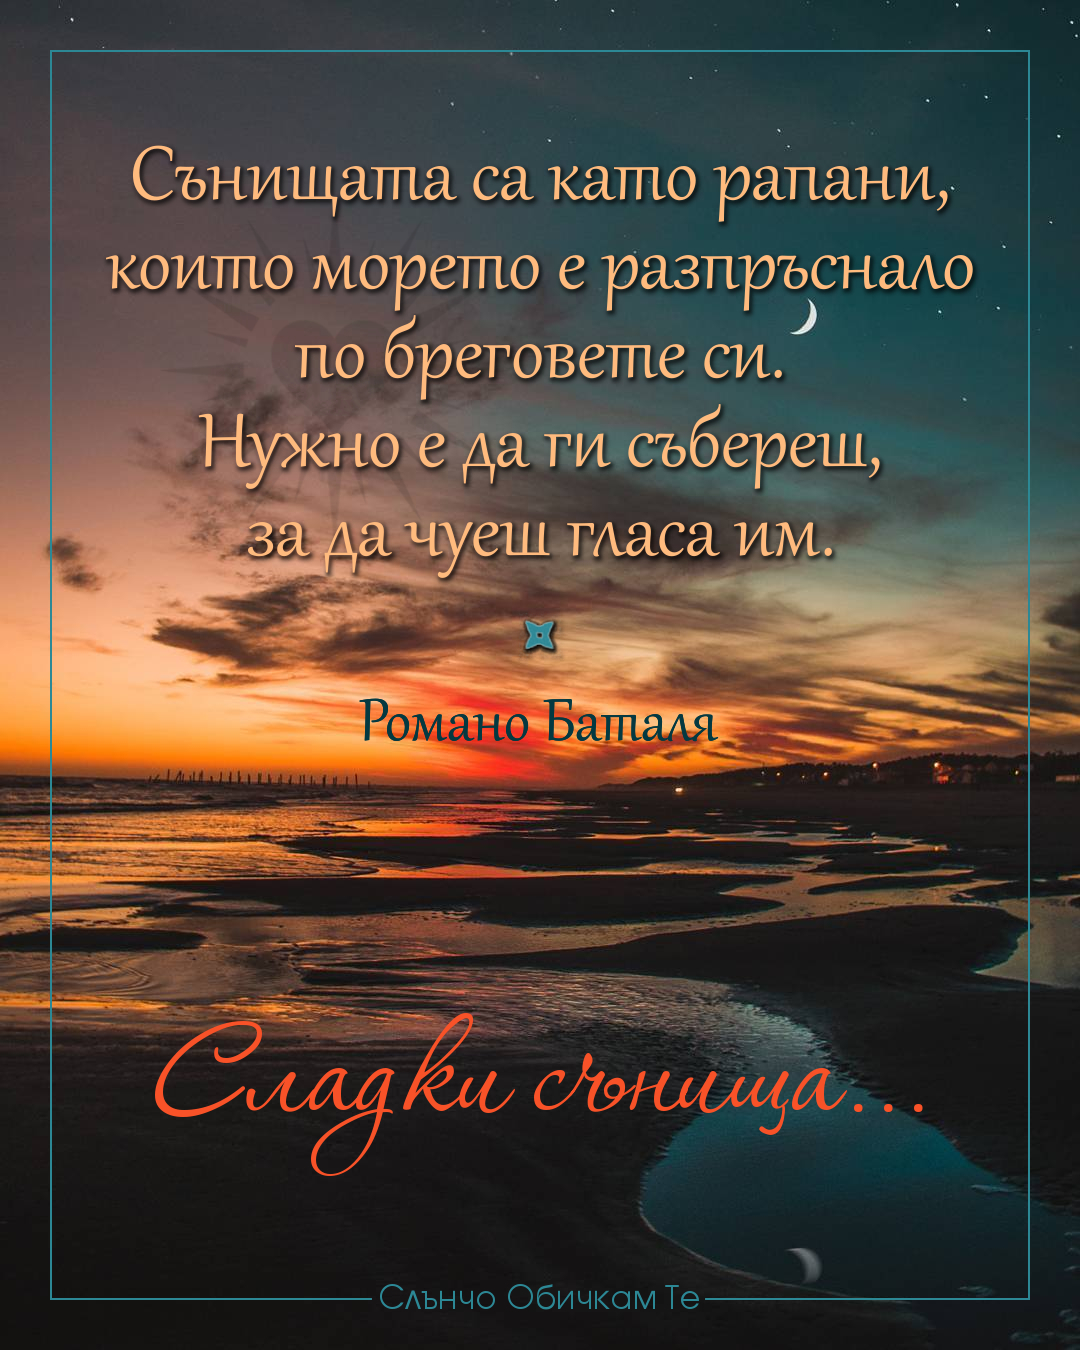 Сладки сънища с цитат на Романо Баталя, картички за лека нощ, пожелания за лека нощ и сладки сънища, Сънищата са като рапани